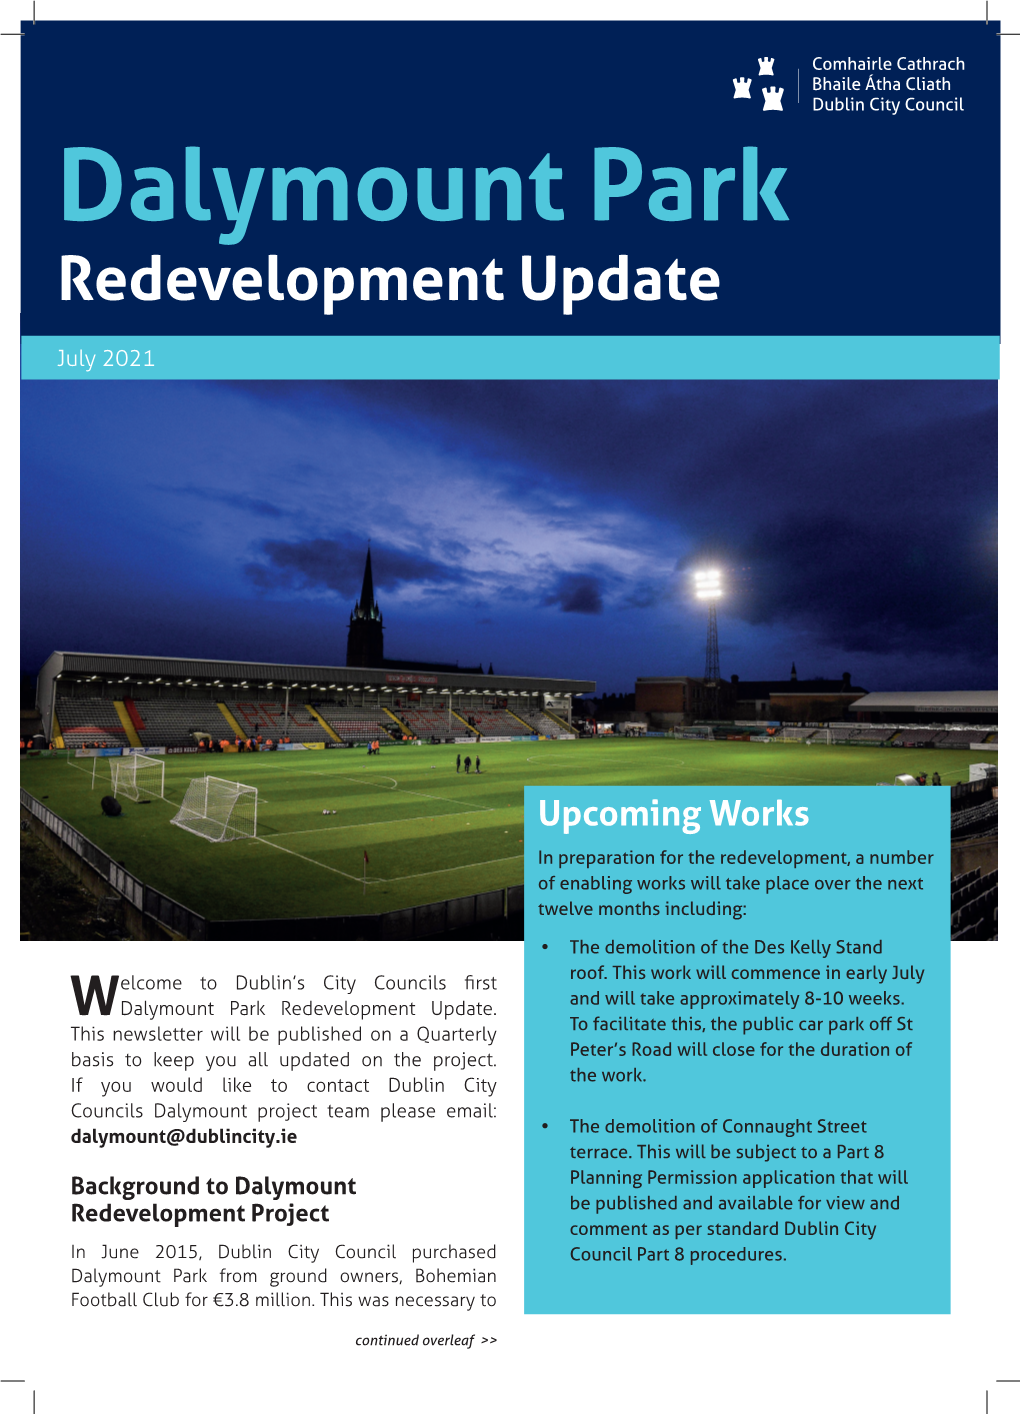 Dalymount Park Redevelopment Update